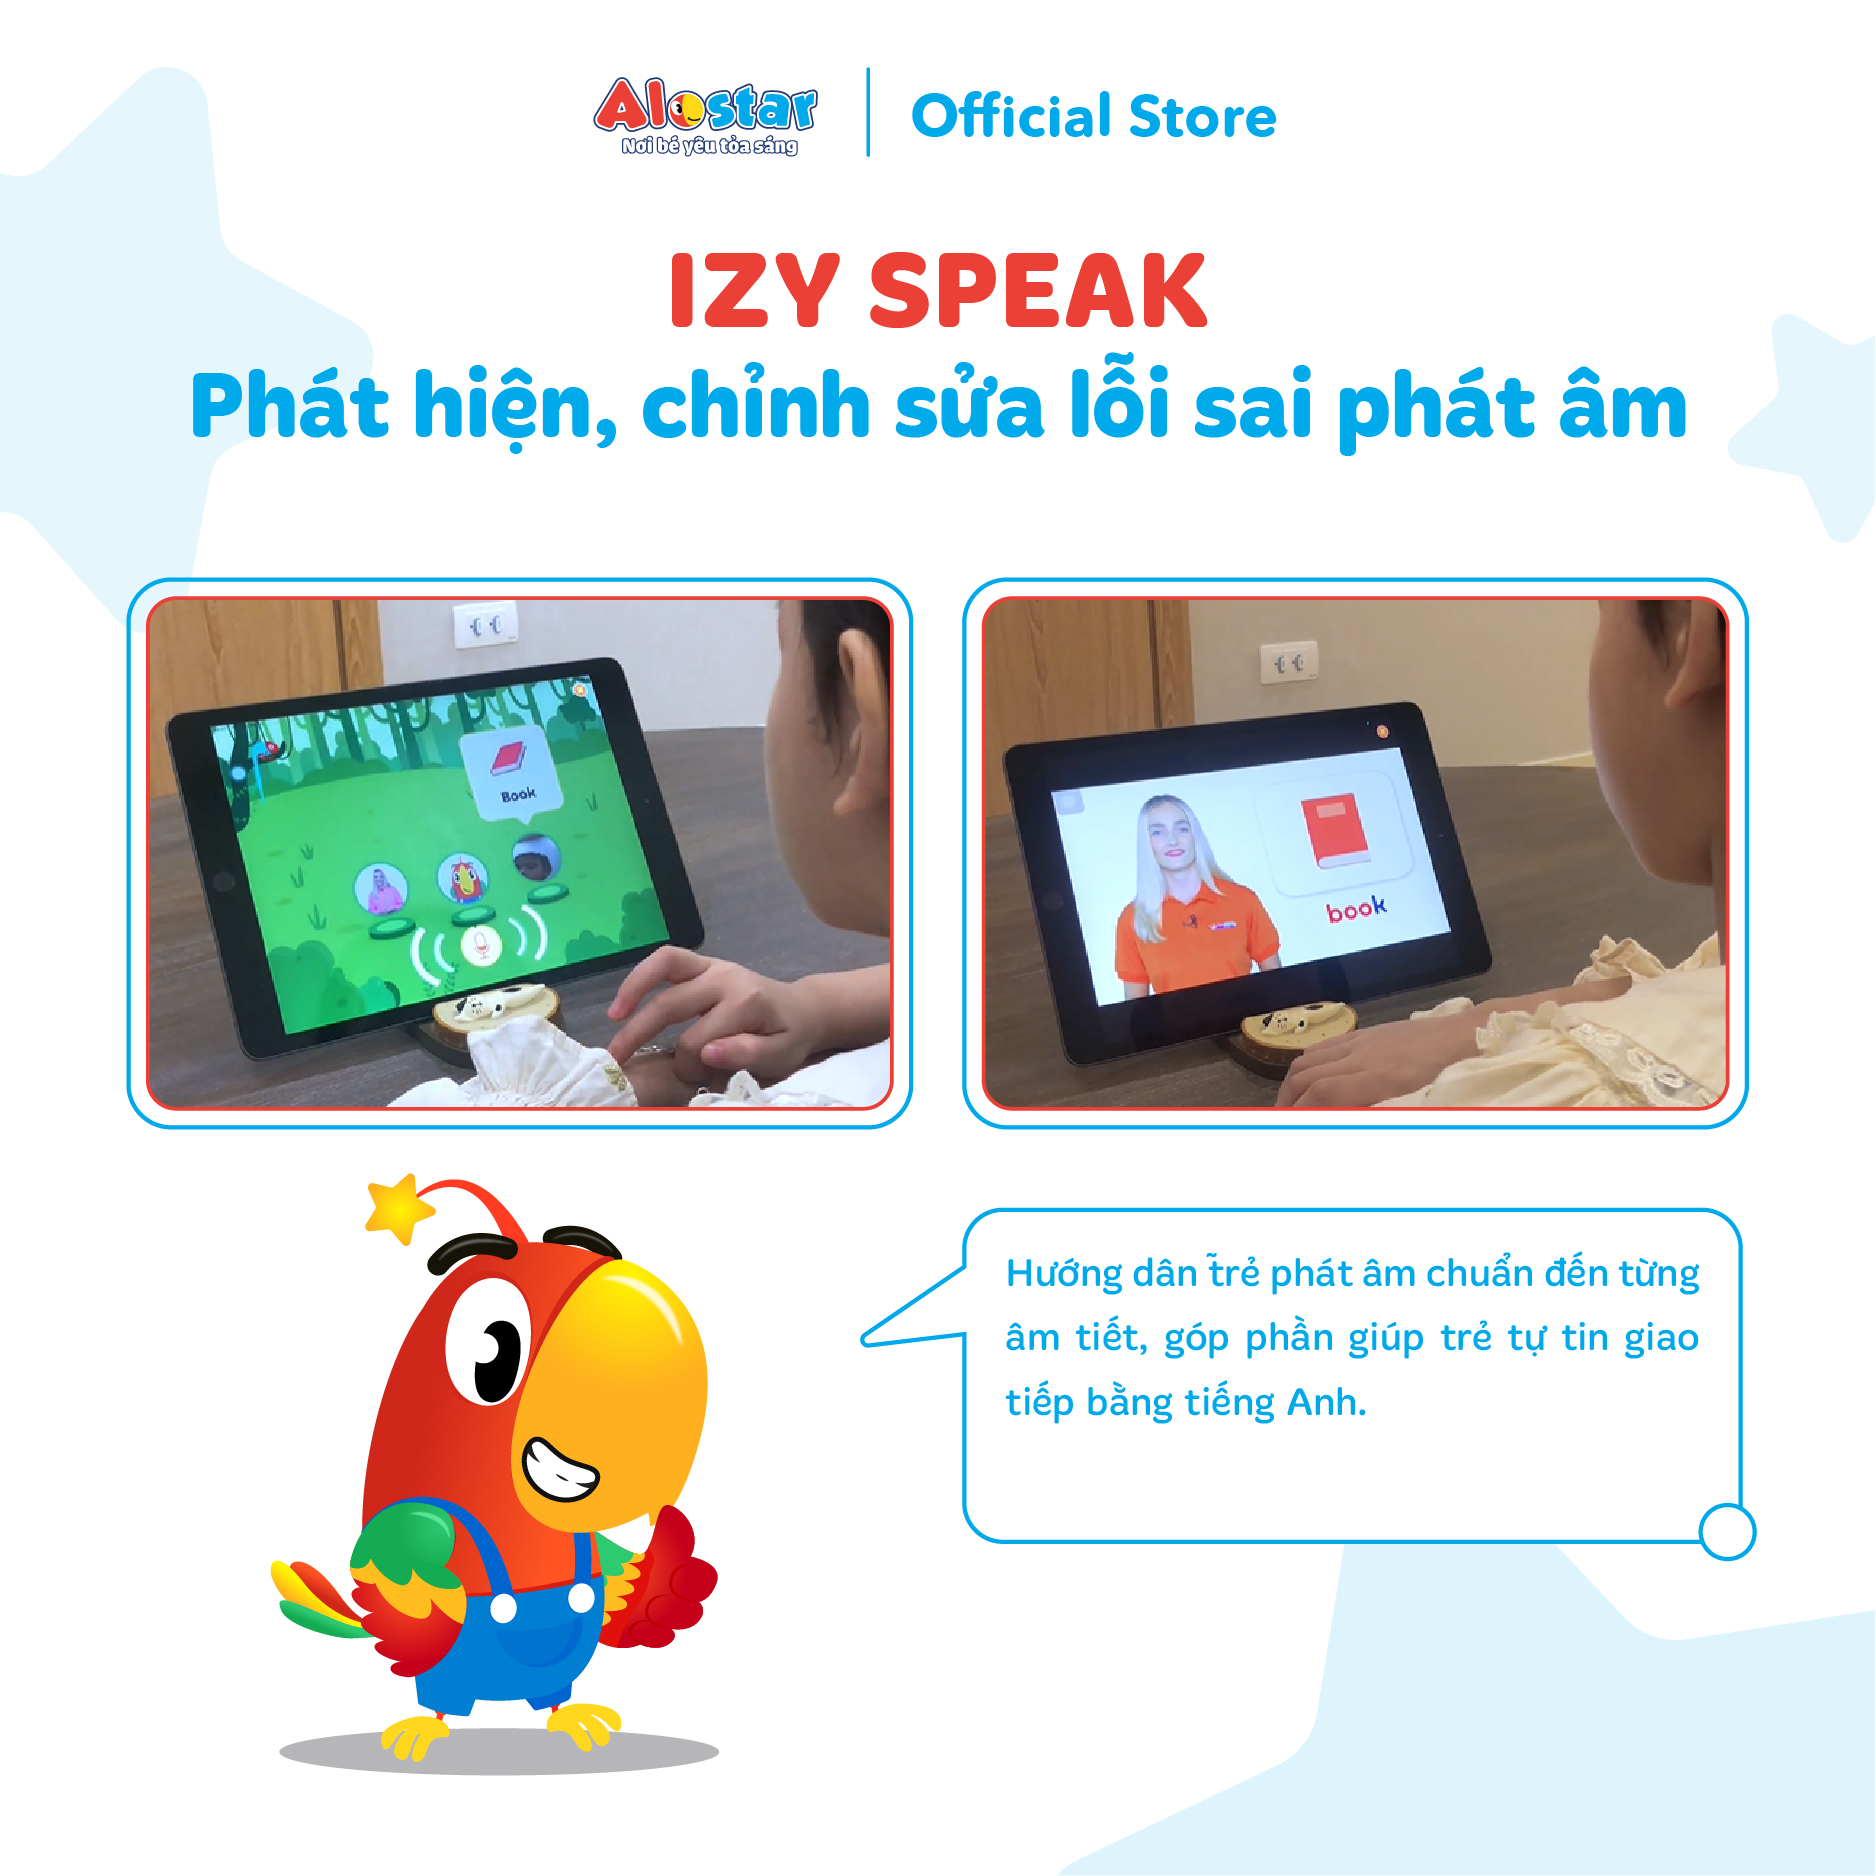 [Trọn đời] ALOSTAR - Mã kích hoạt khóa học tiếng Anh cho trẻ 2-7 tuổi Áp dụng online trên toàn quốc